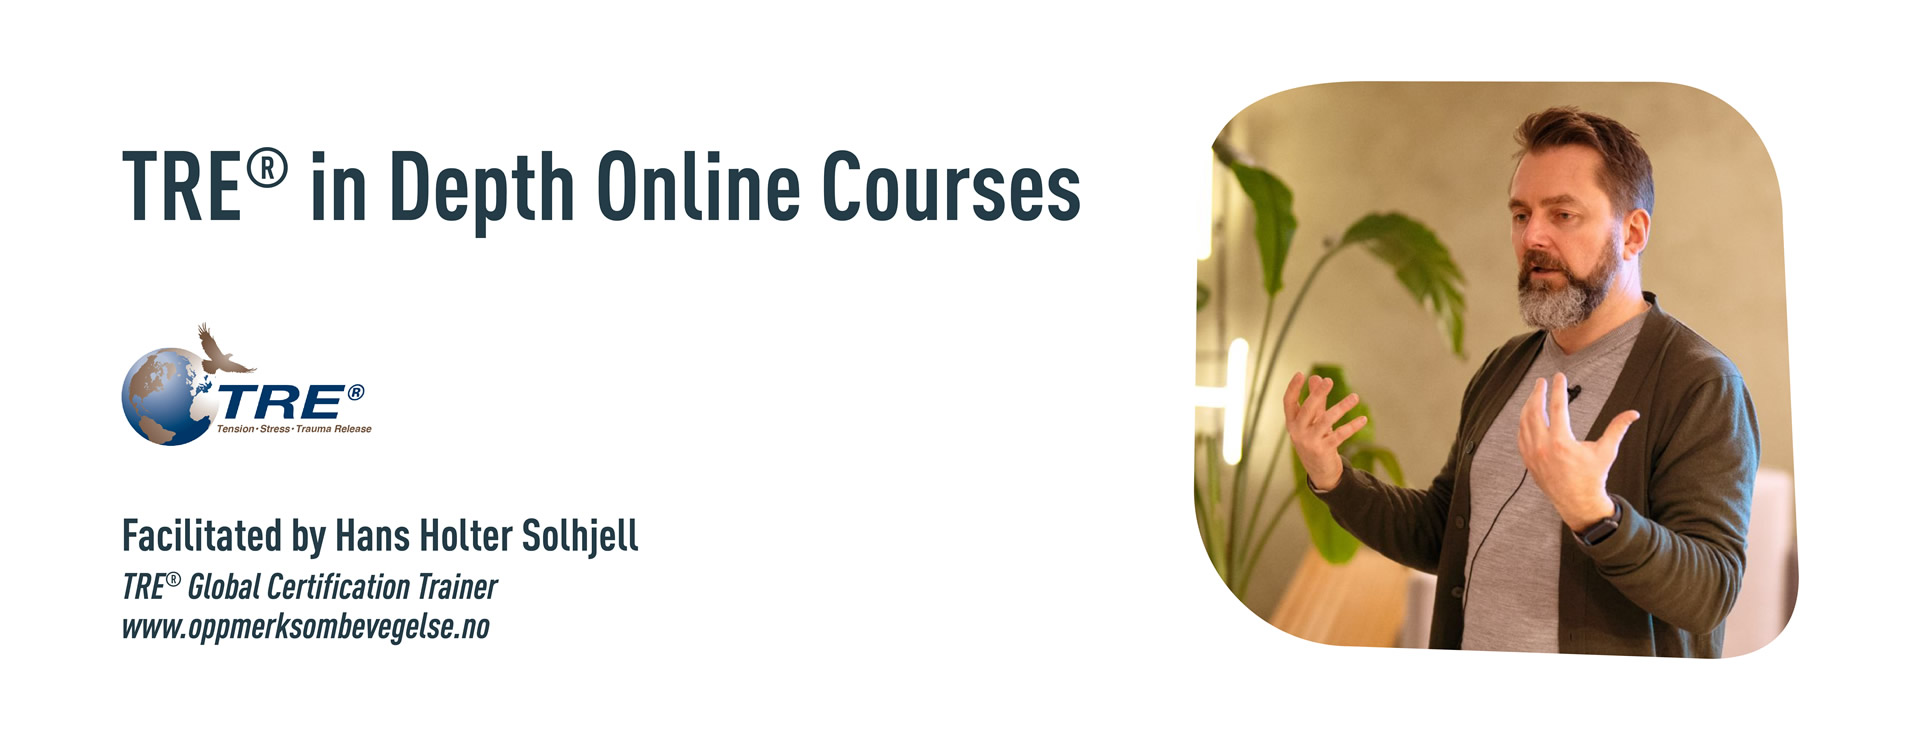 TRE® in Depth Online Courses